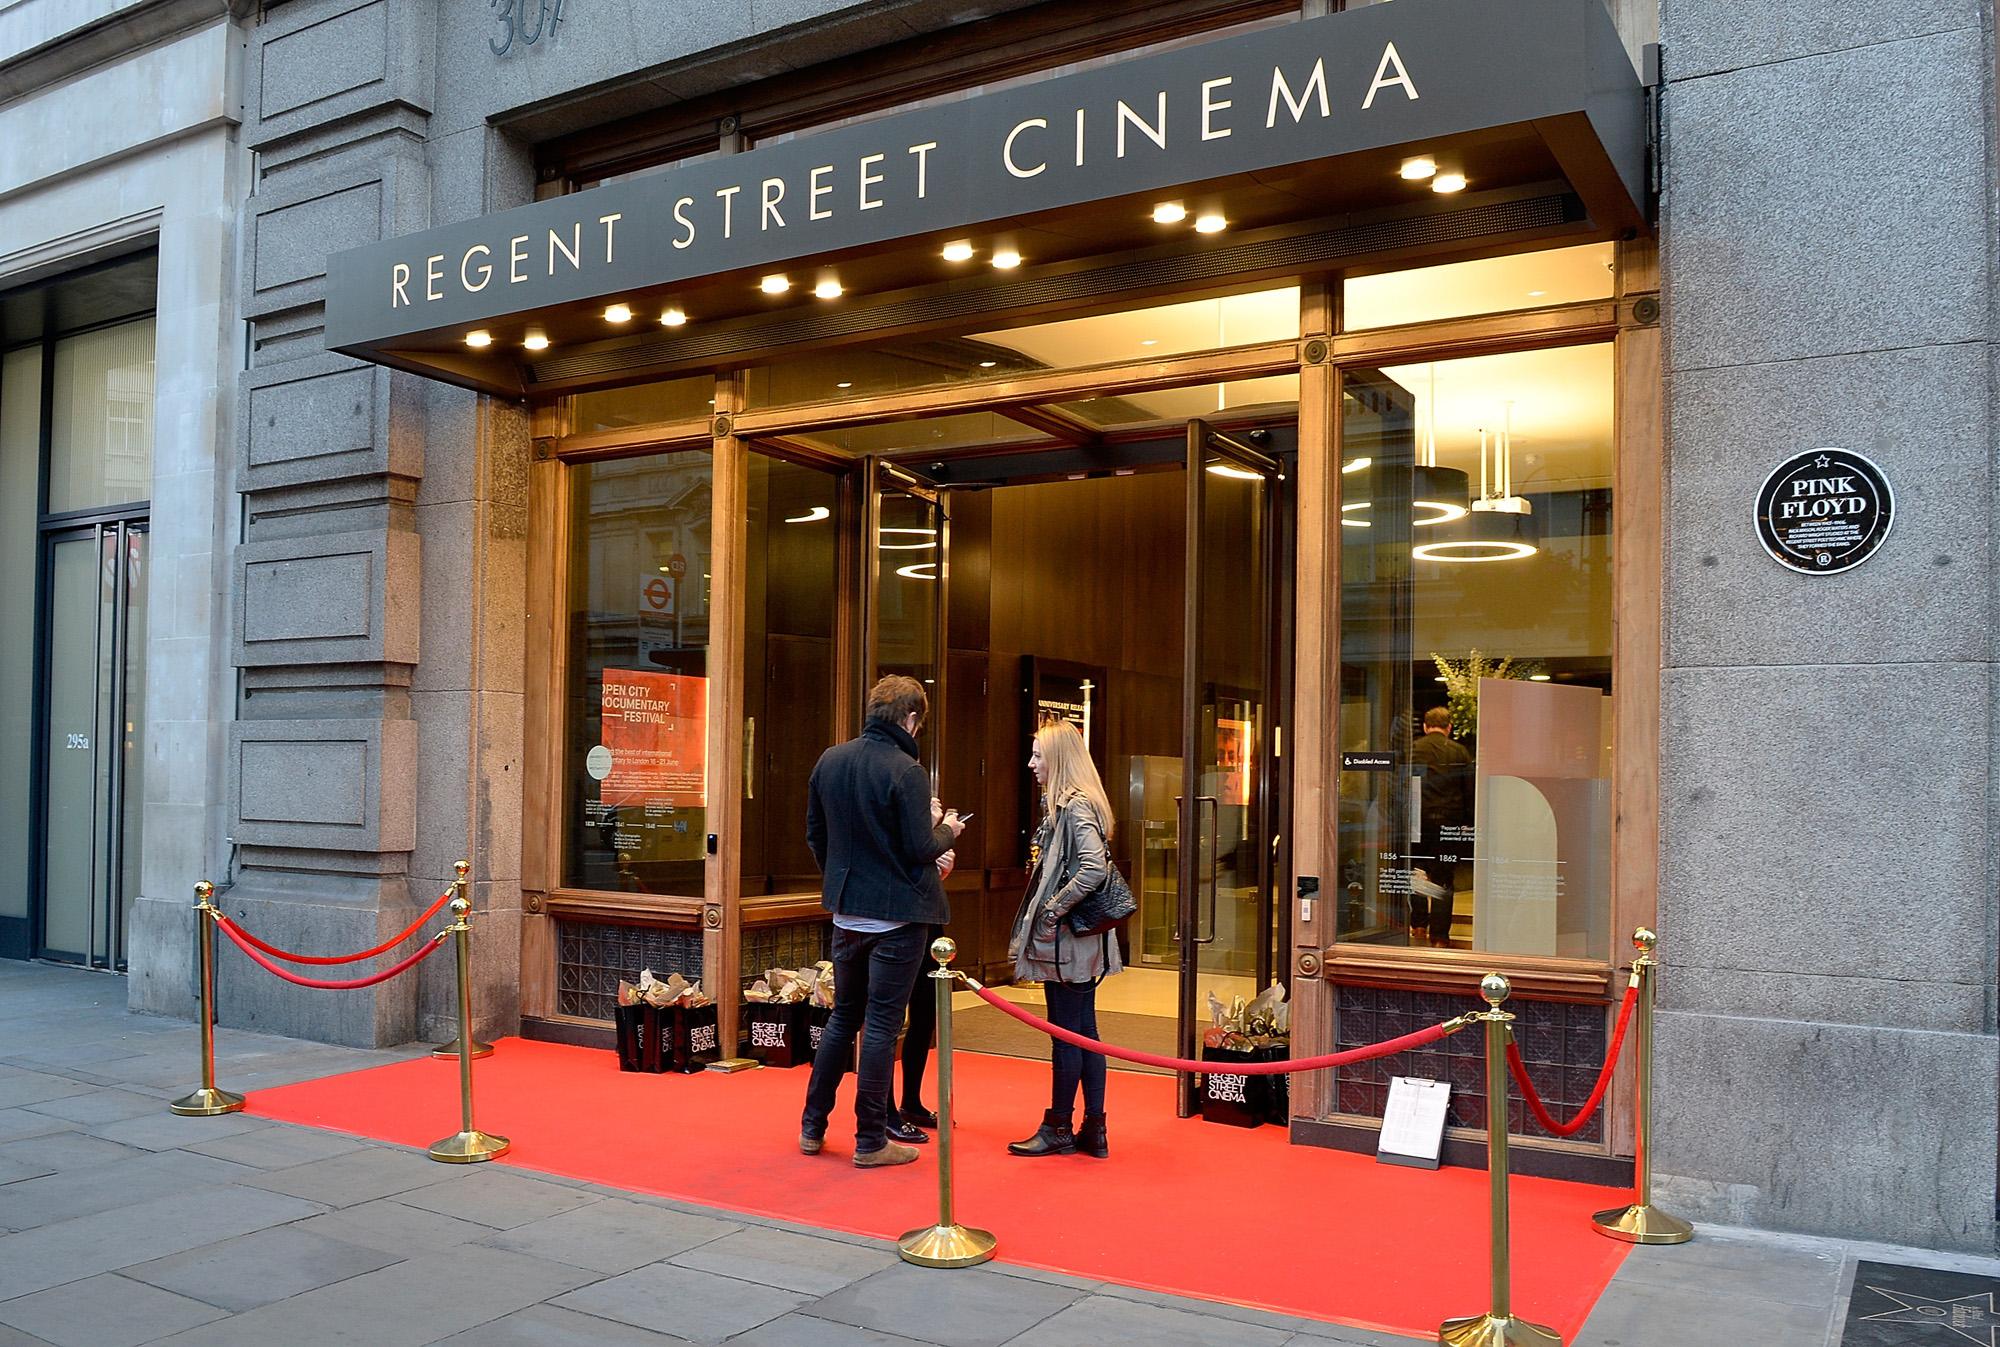 Regent Street Cinema, Regent Street Cinema photo #9